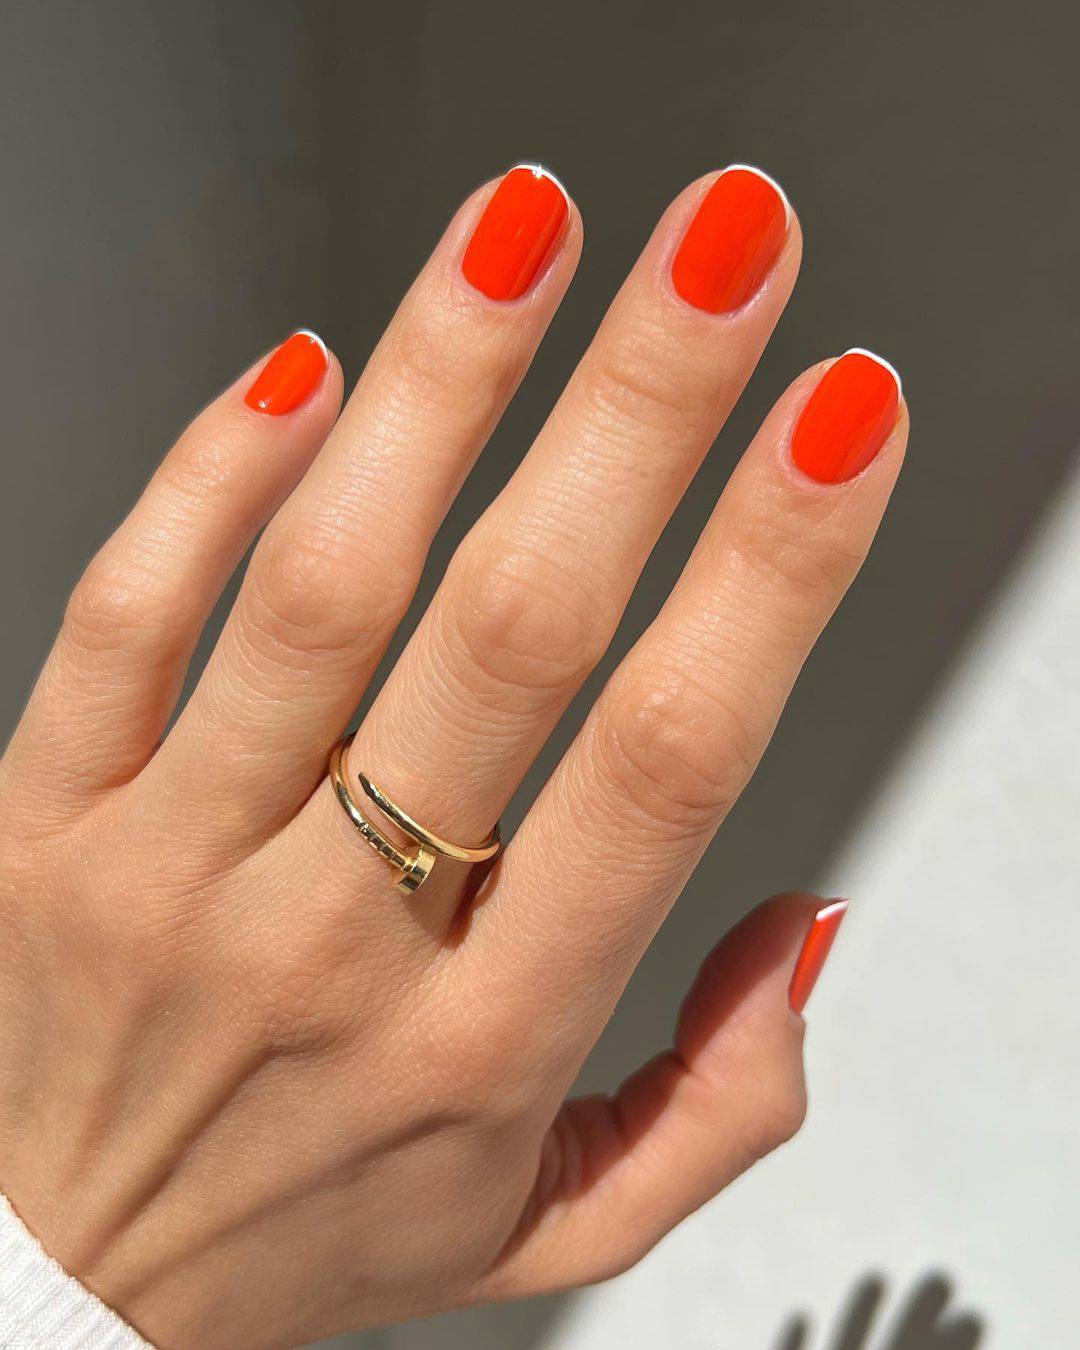 Manicura francesa para uñas cortas: en rojo